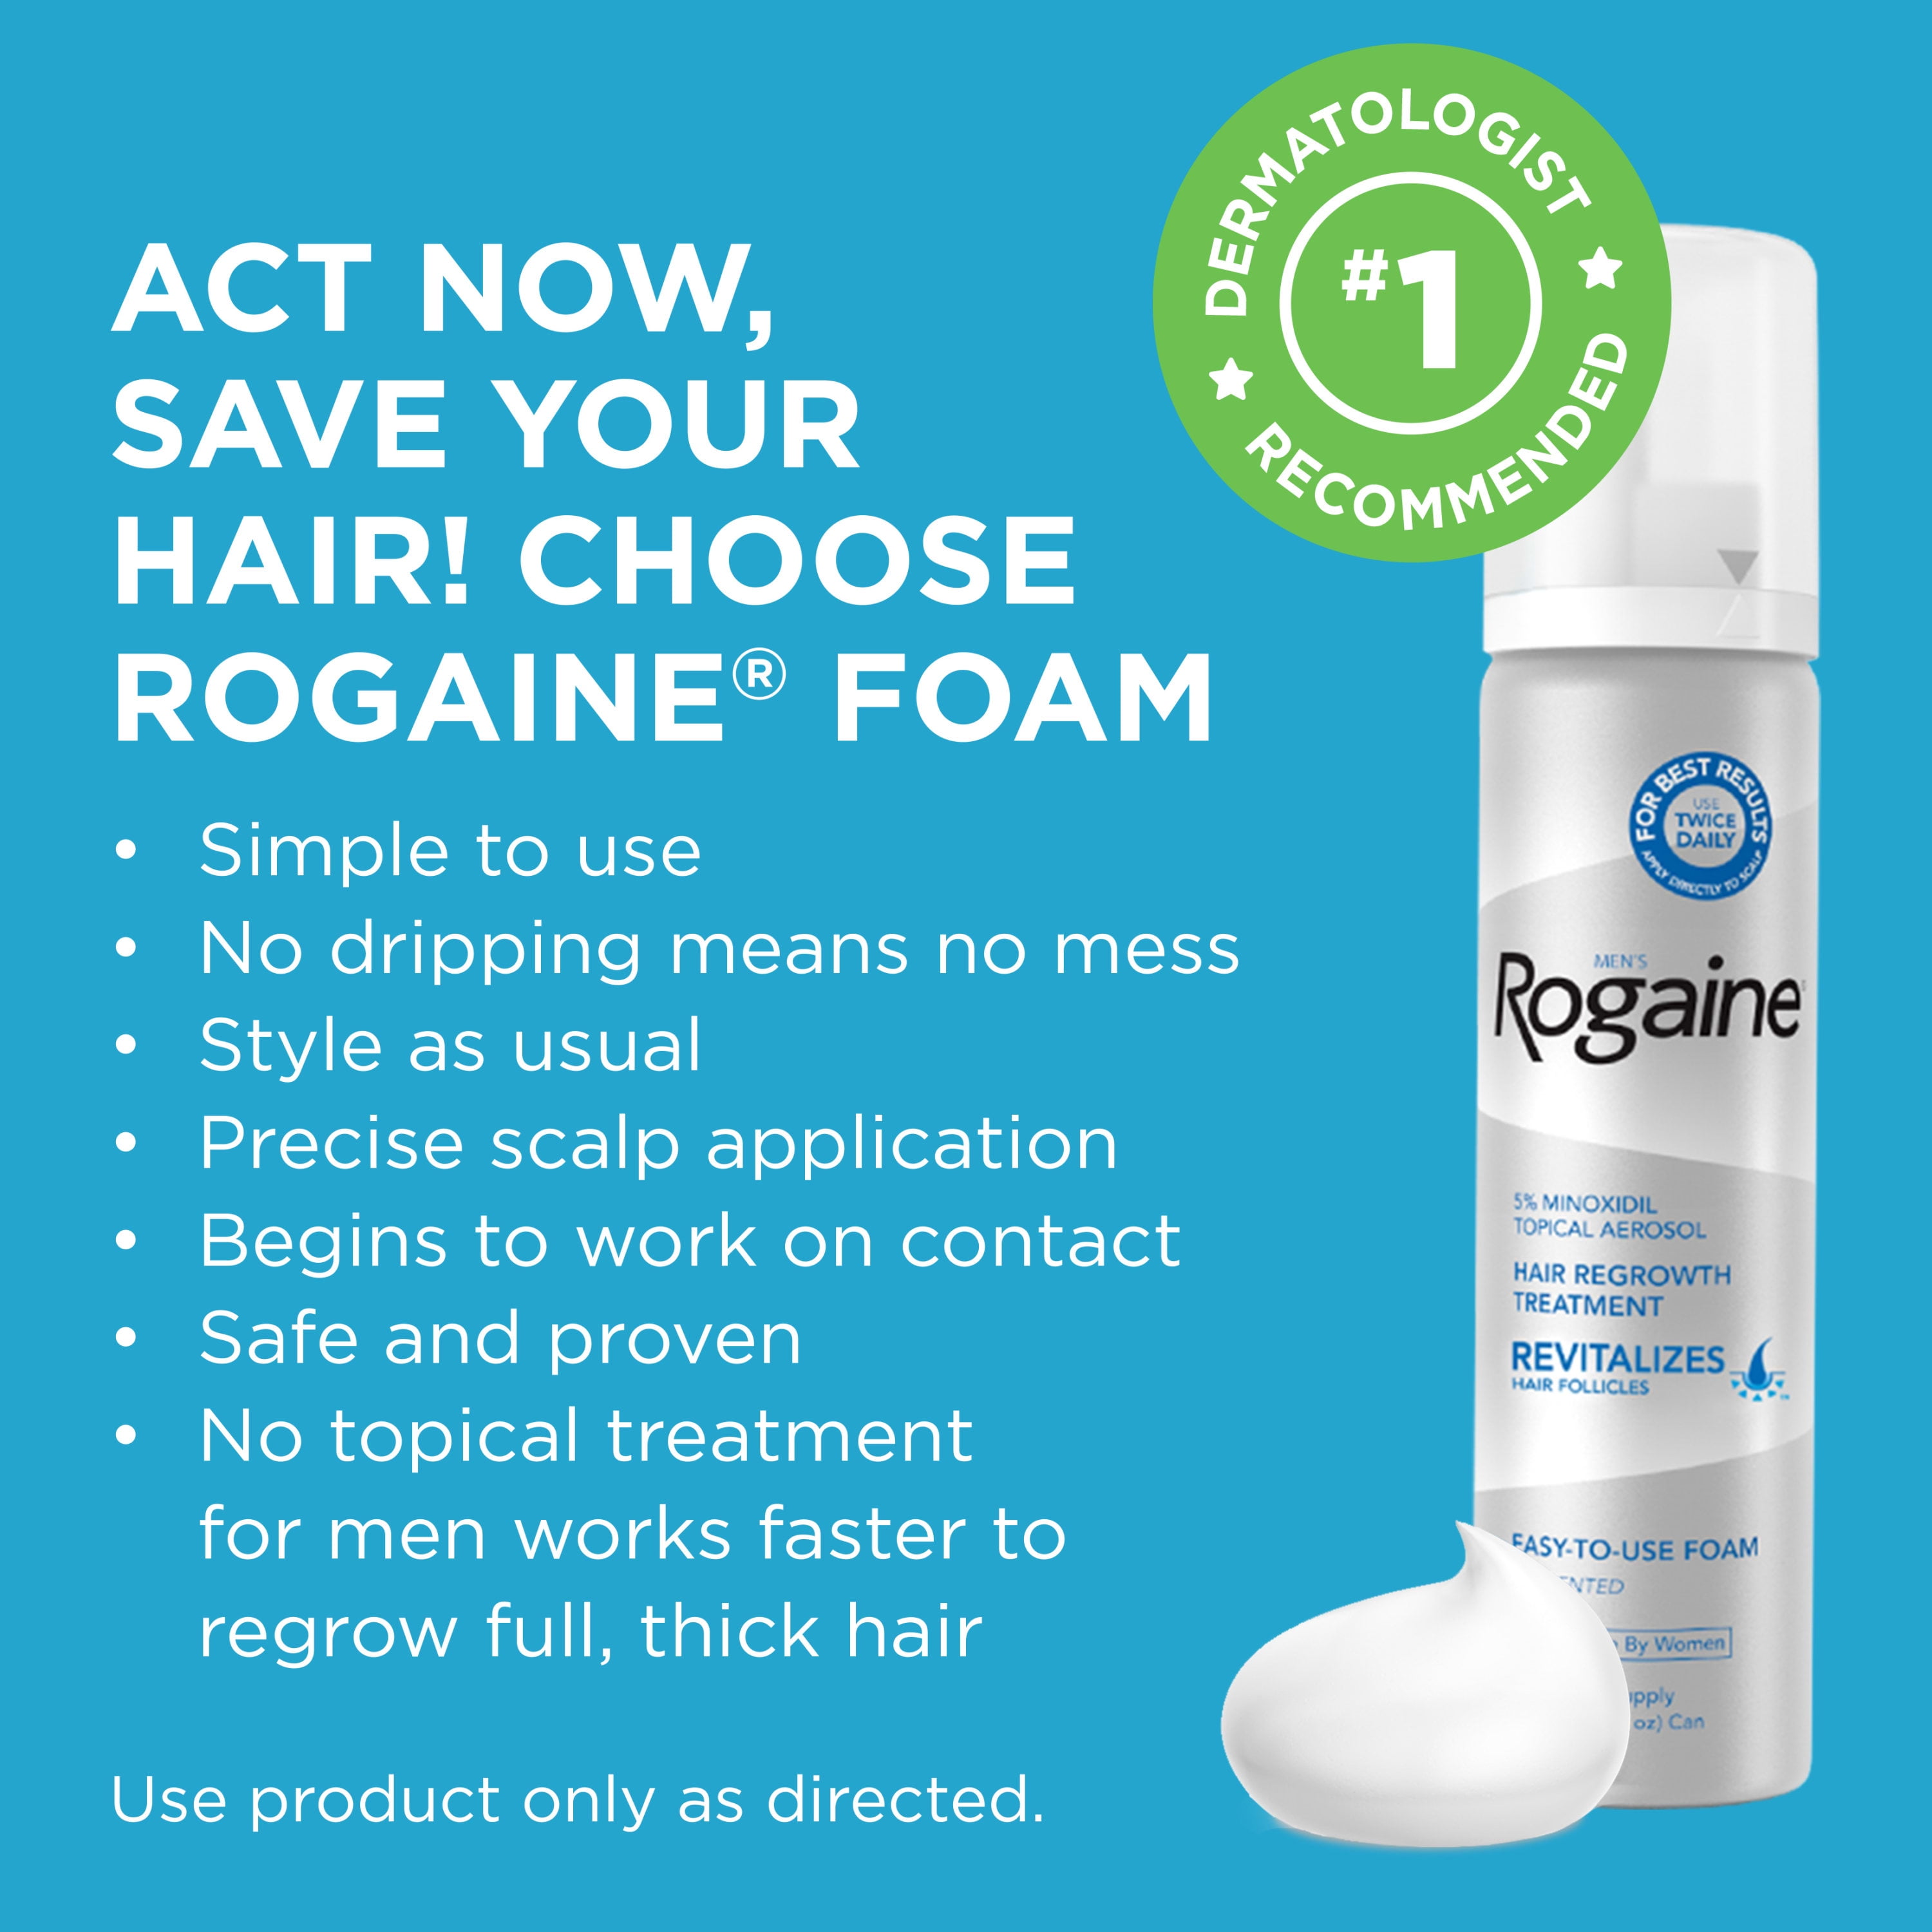 genvinde fra nu af Professor Men's Rogaine 5% Minoxidil Foam for Hair Regrowth, 3-month Supply -  Walmart.com